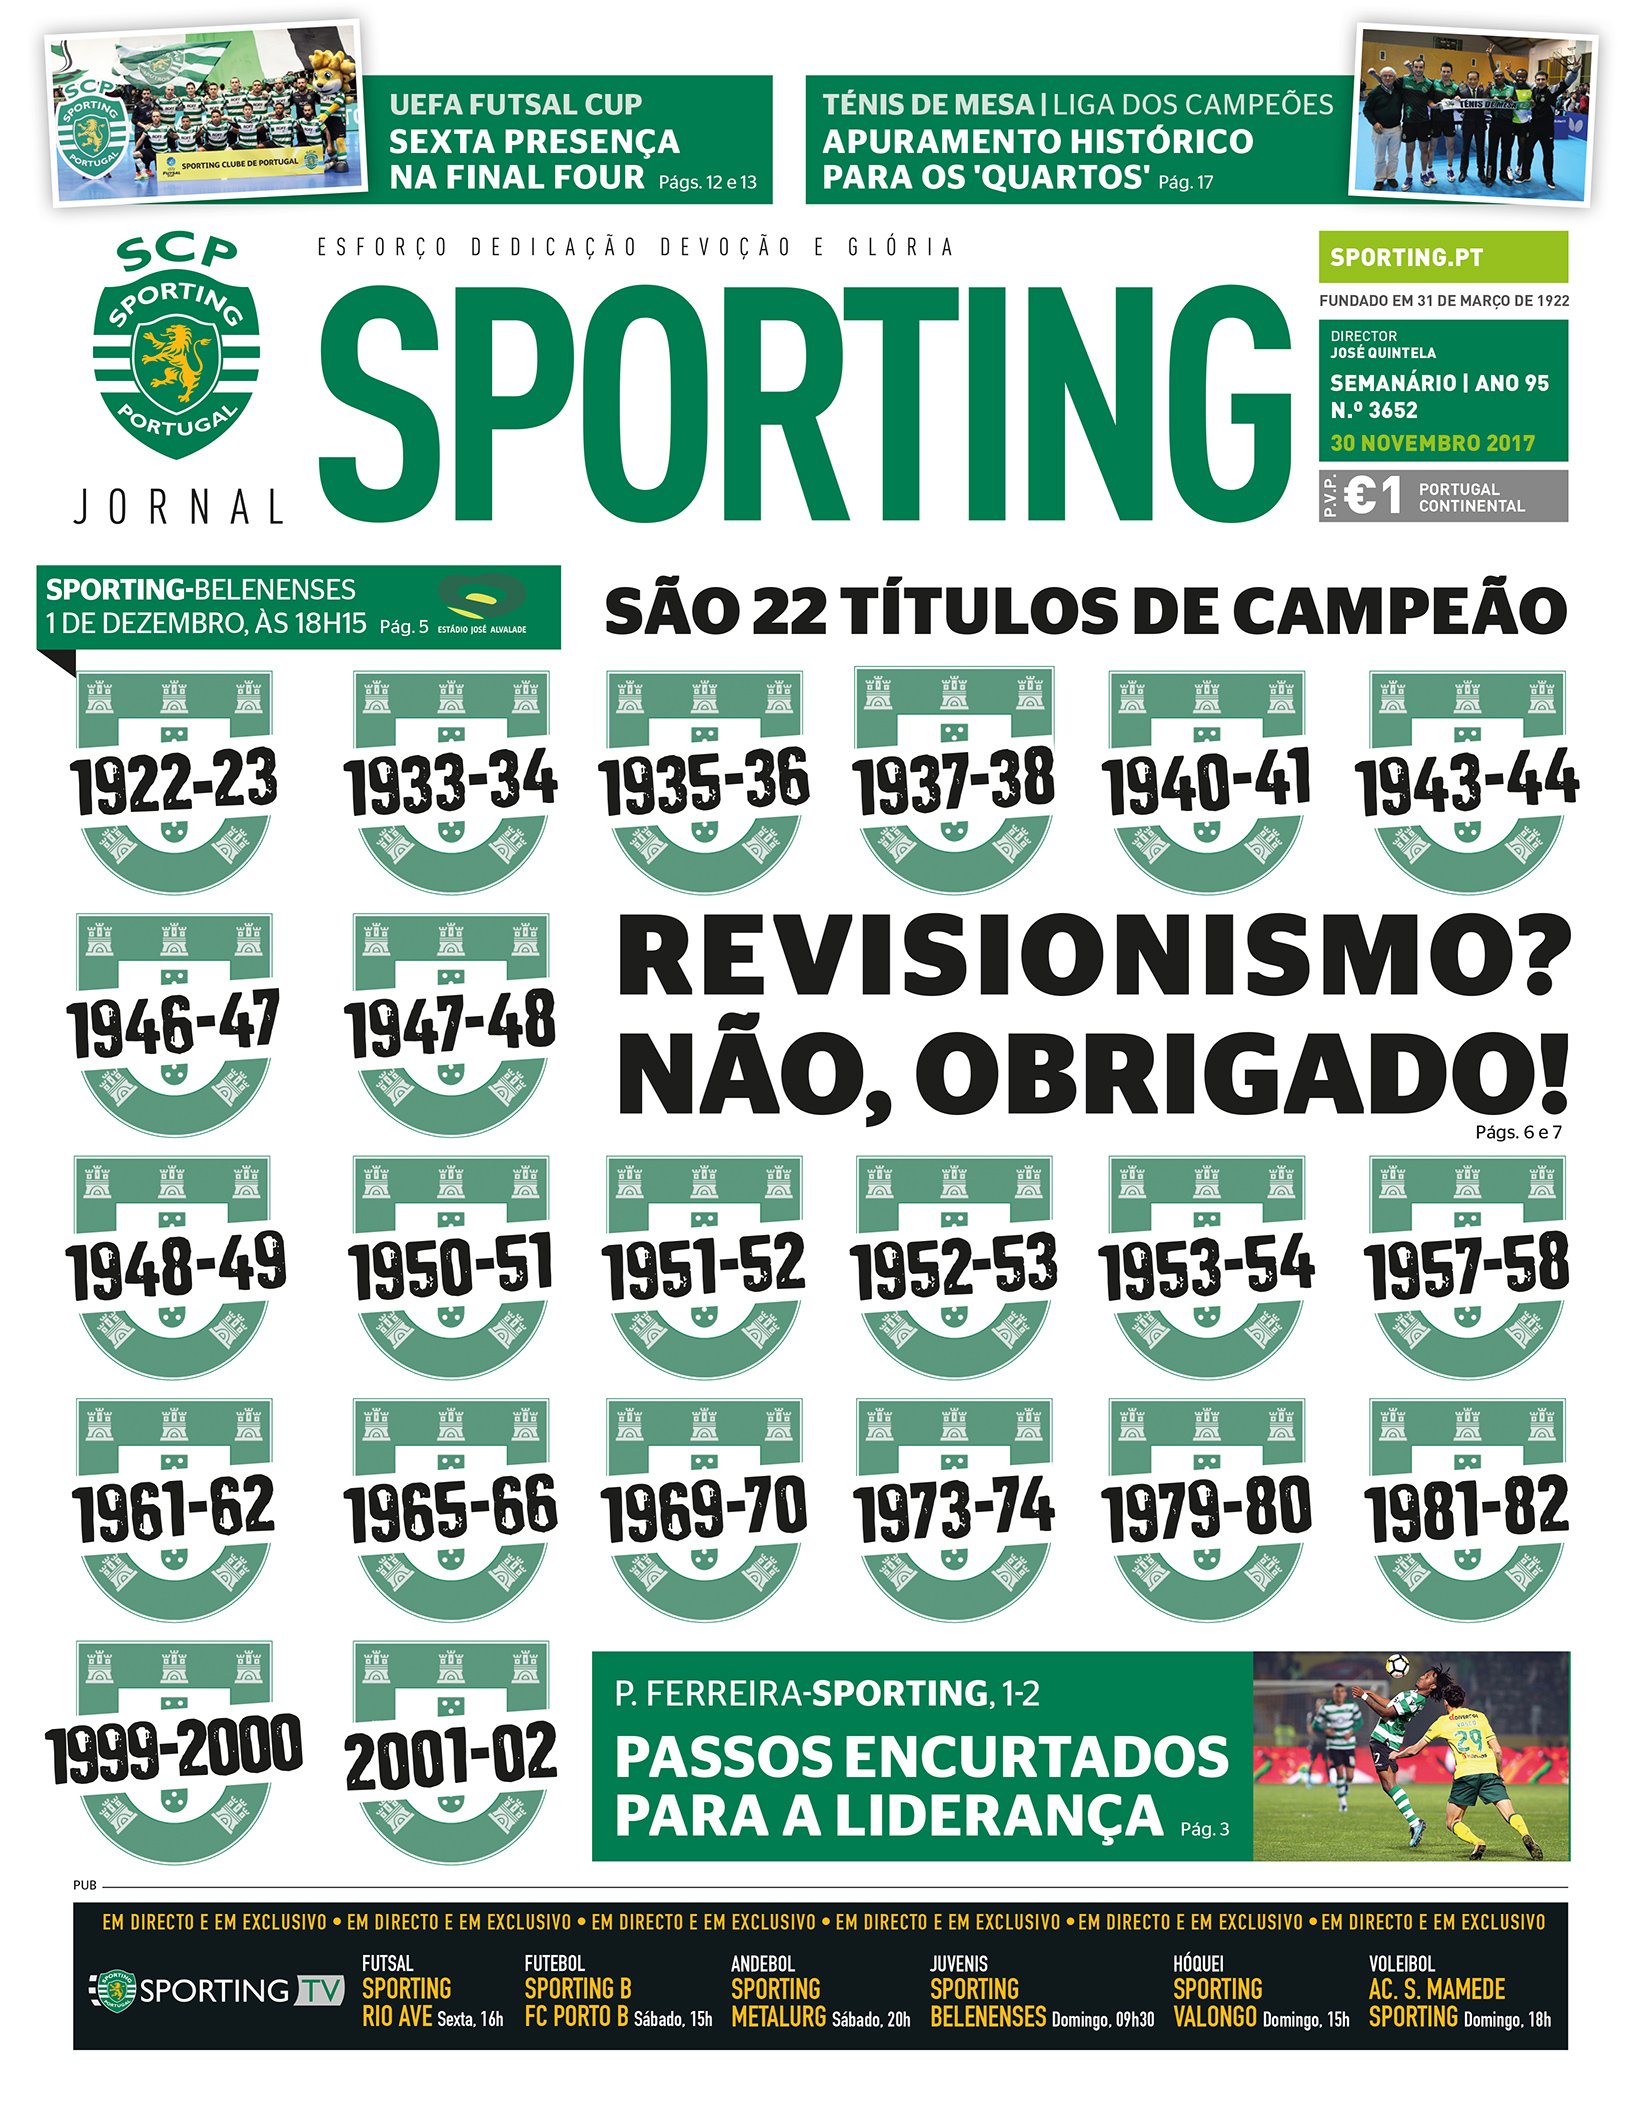 Sporting CP on X: Os 22 títulos de campeão nacional do #SportingCP são o  destaque principal do #JornalSporting desta semana, que já está nas bancas!  A pedir uma leitura atenta 👀  /